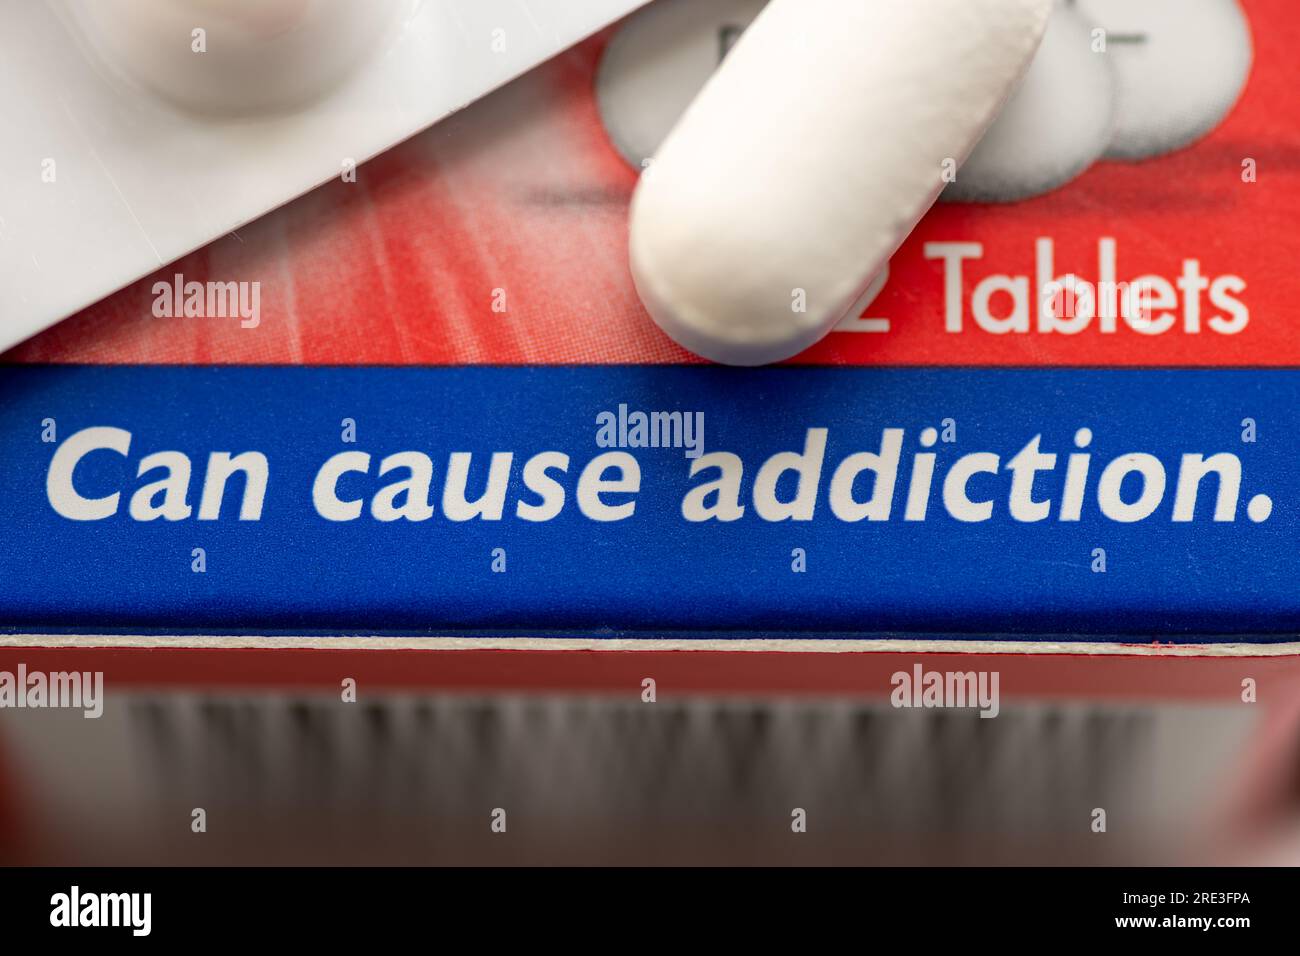 Un concepto de adicción médica con una caja de medicamento que contiene opioides y la advertencia de que puede causar adicción. Foto de stock